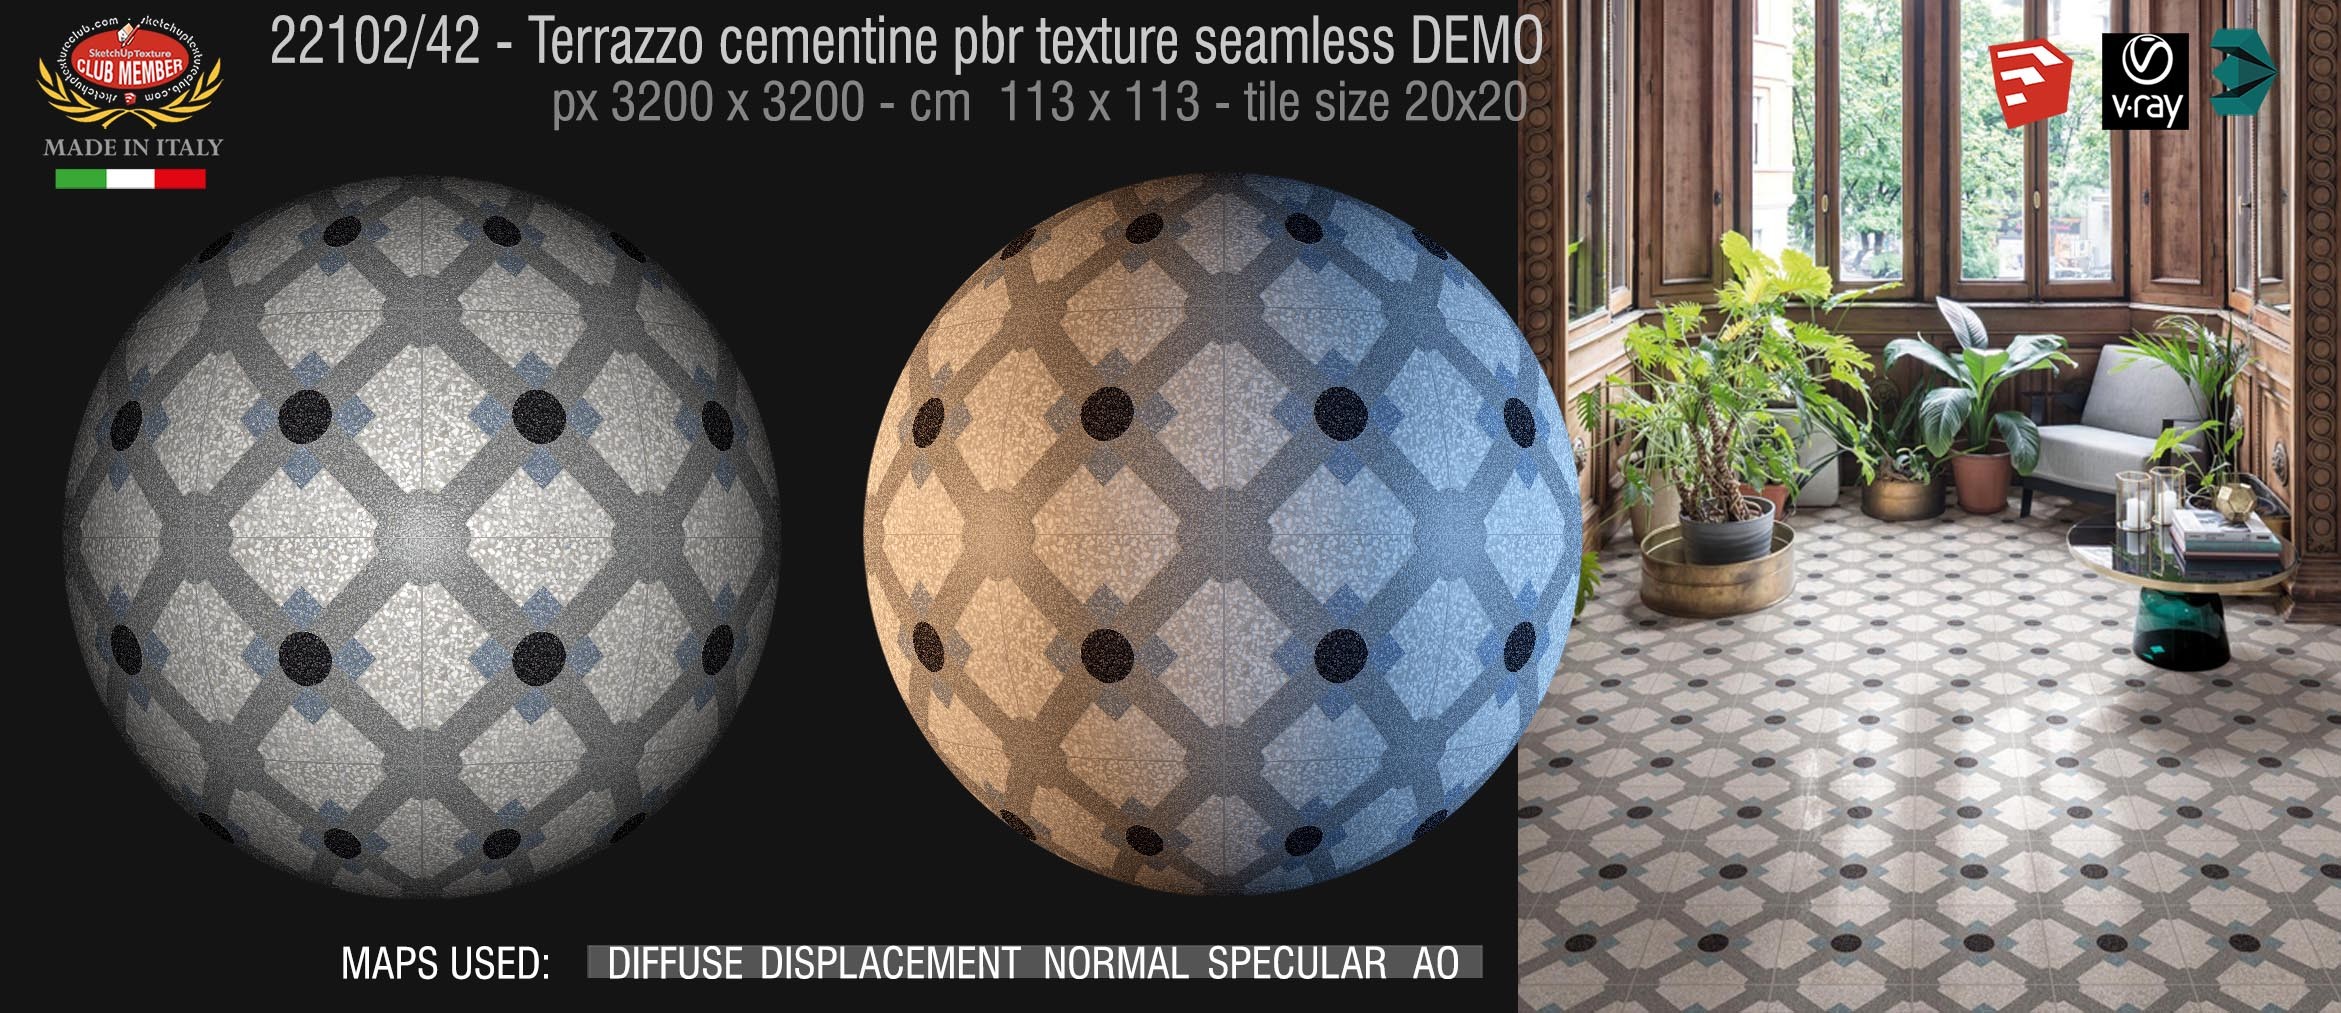 22102/42  terrazzo floor cementine style pbr texture seamless DEMO /  D_Segni Scaglie 20x20 size by Marazzi